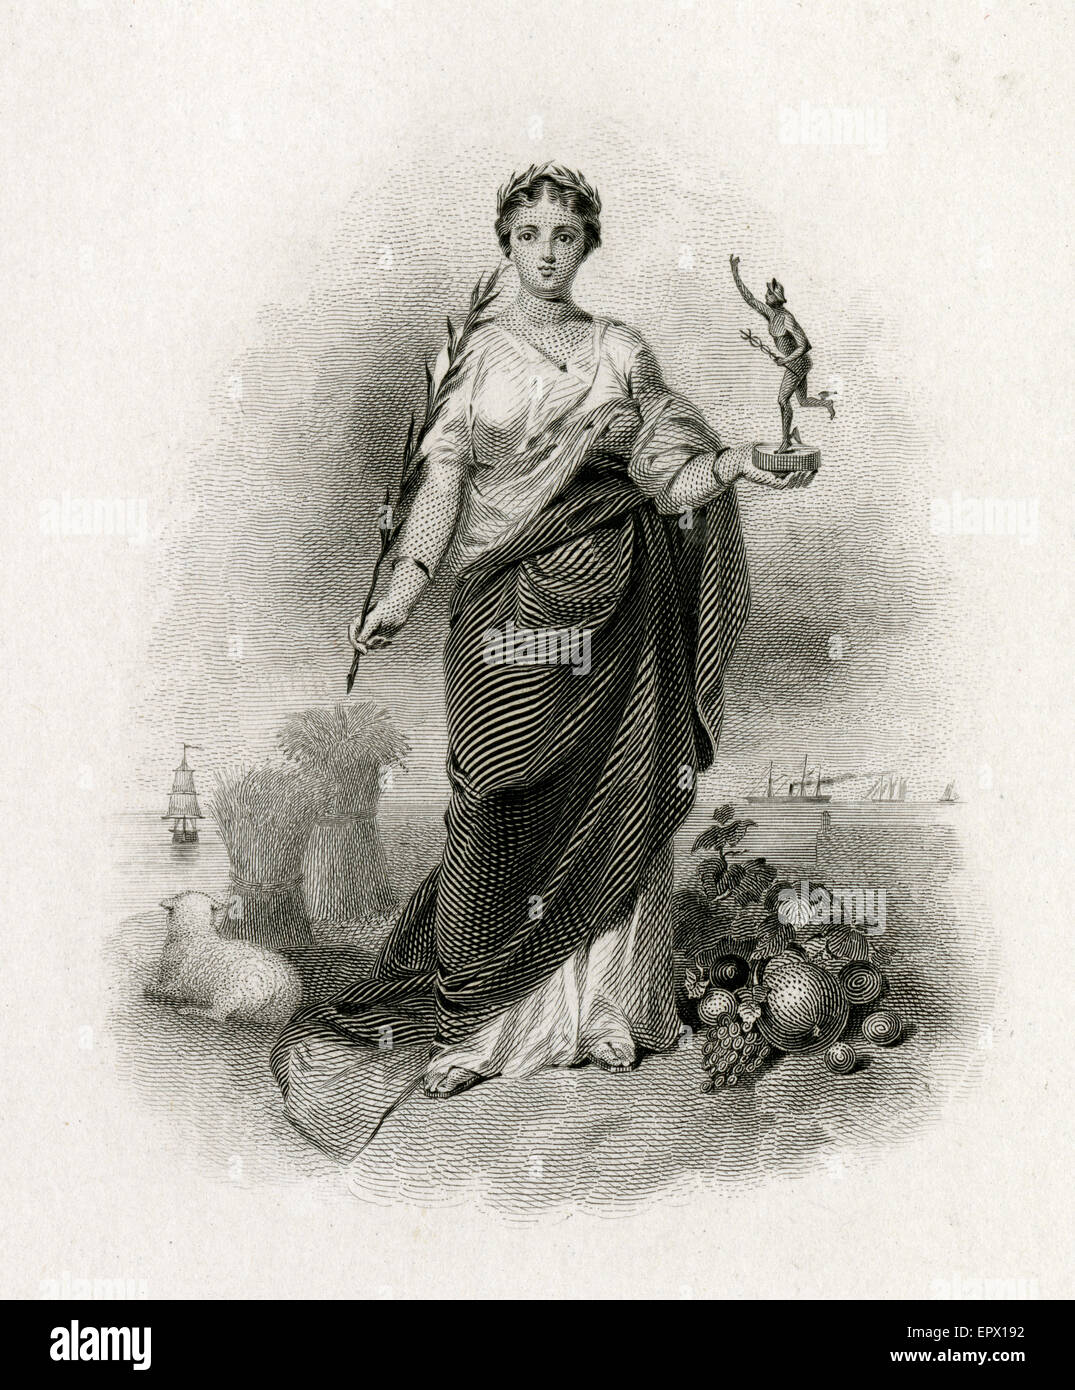 Antike c1870 Stahlstich von Lady Columbia, die Rückkehr des Friedens darstellt. "Columbia" ist eine historische und poetische Bezeichnung für die Vereinigten Staaten von Amerika und auch als einer der Namen seiner weibliche Personifizierung. Stockfoto